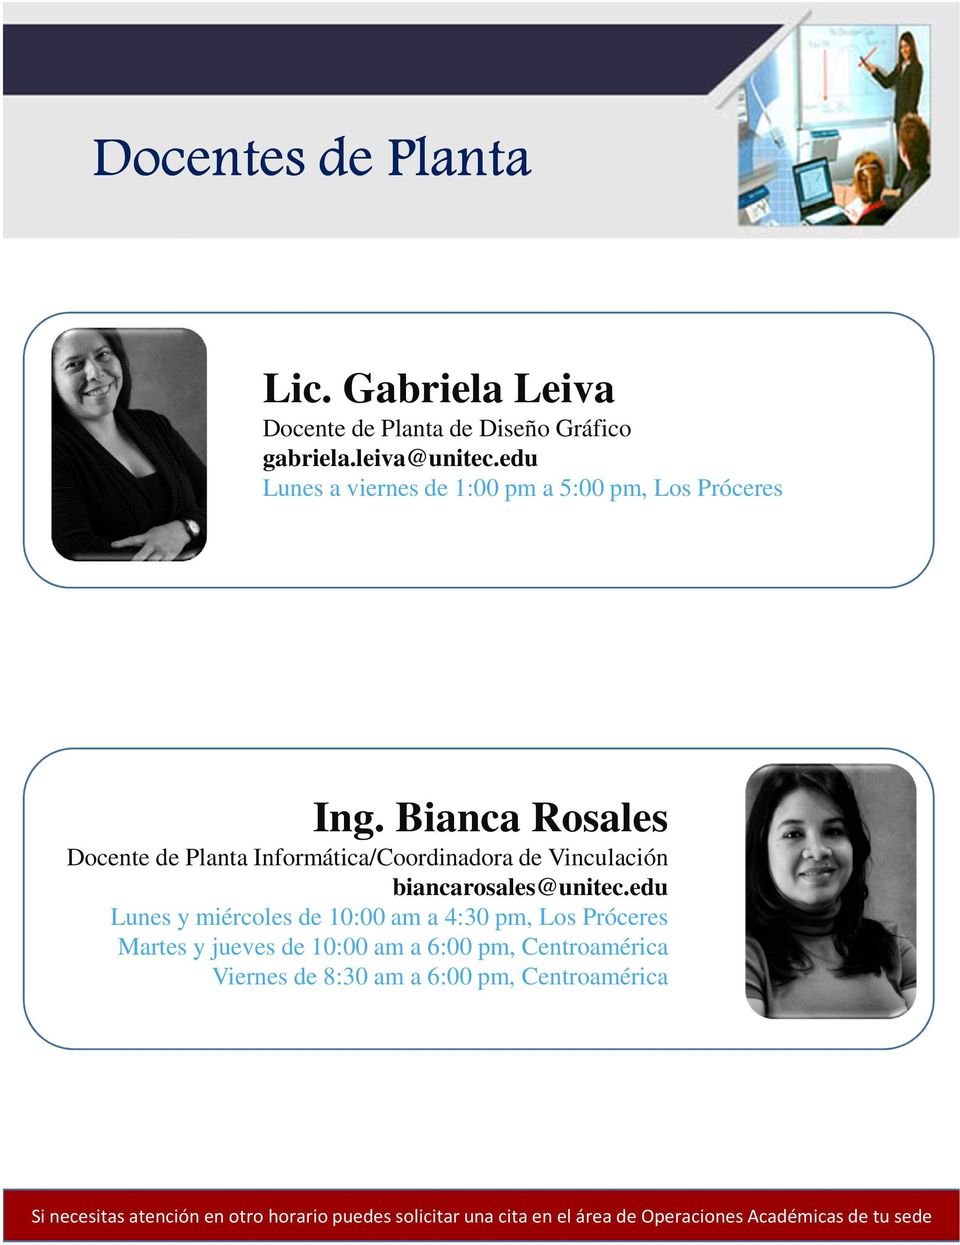 Bianca Rosales Docente de Planta Informática/Coordinadora de Vinculación biancarosales@unitec.